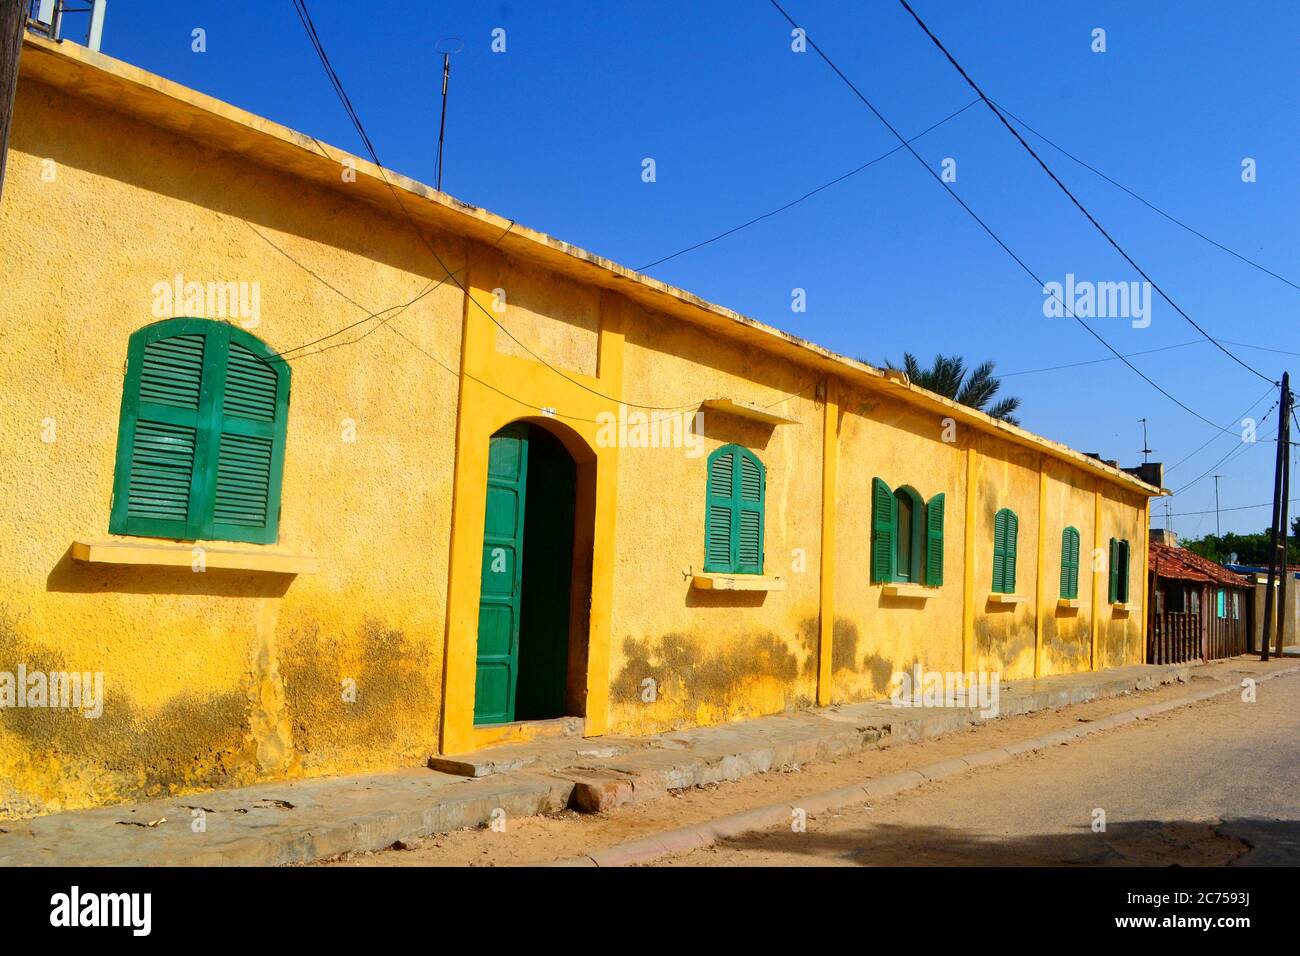 Traditionelle farbenfrohe Architektur in Saint-Louis, der ehemaligen Hauptstadt des Senegal Stockfoto